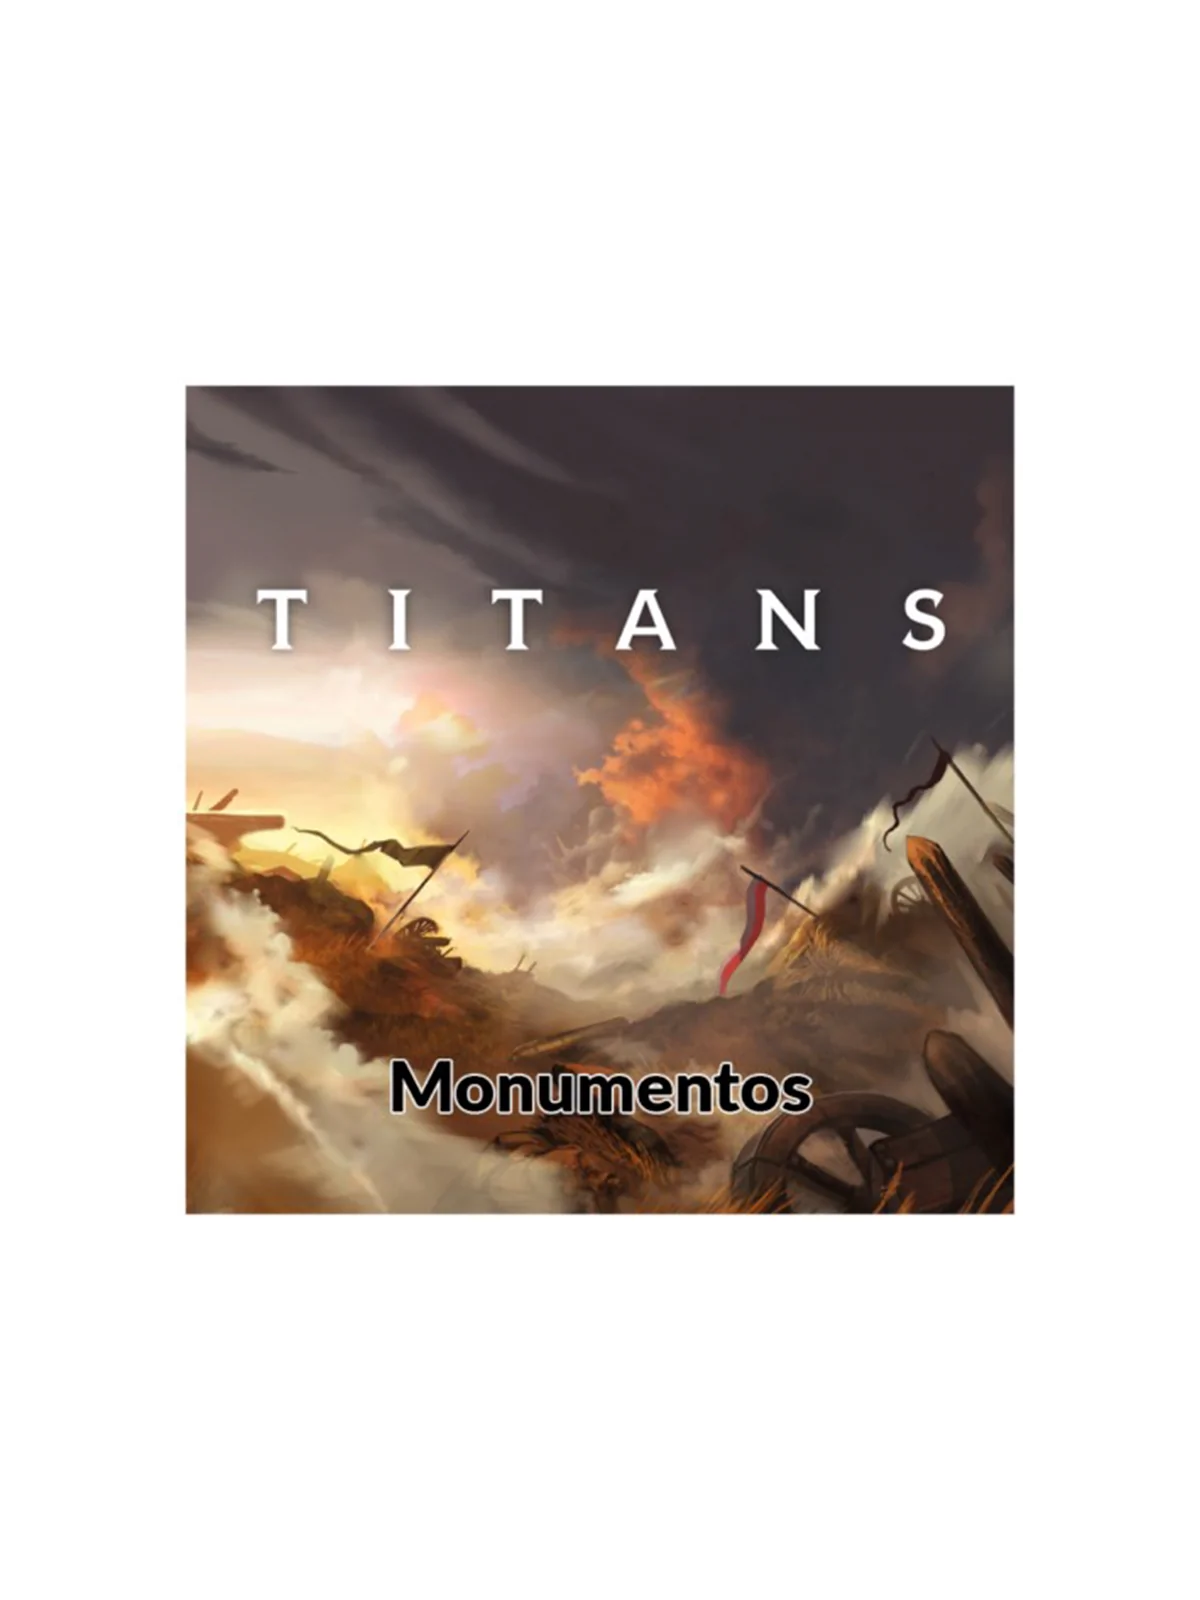 Comprar Titans: Monuments barato al mejor precio 13,49 € de Last Level